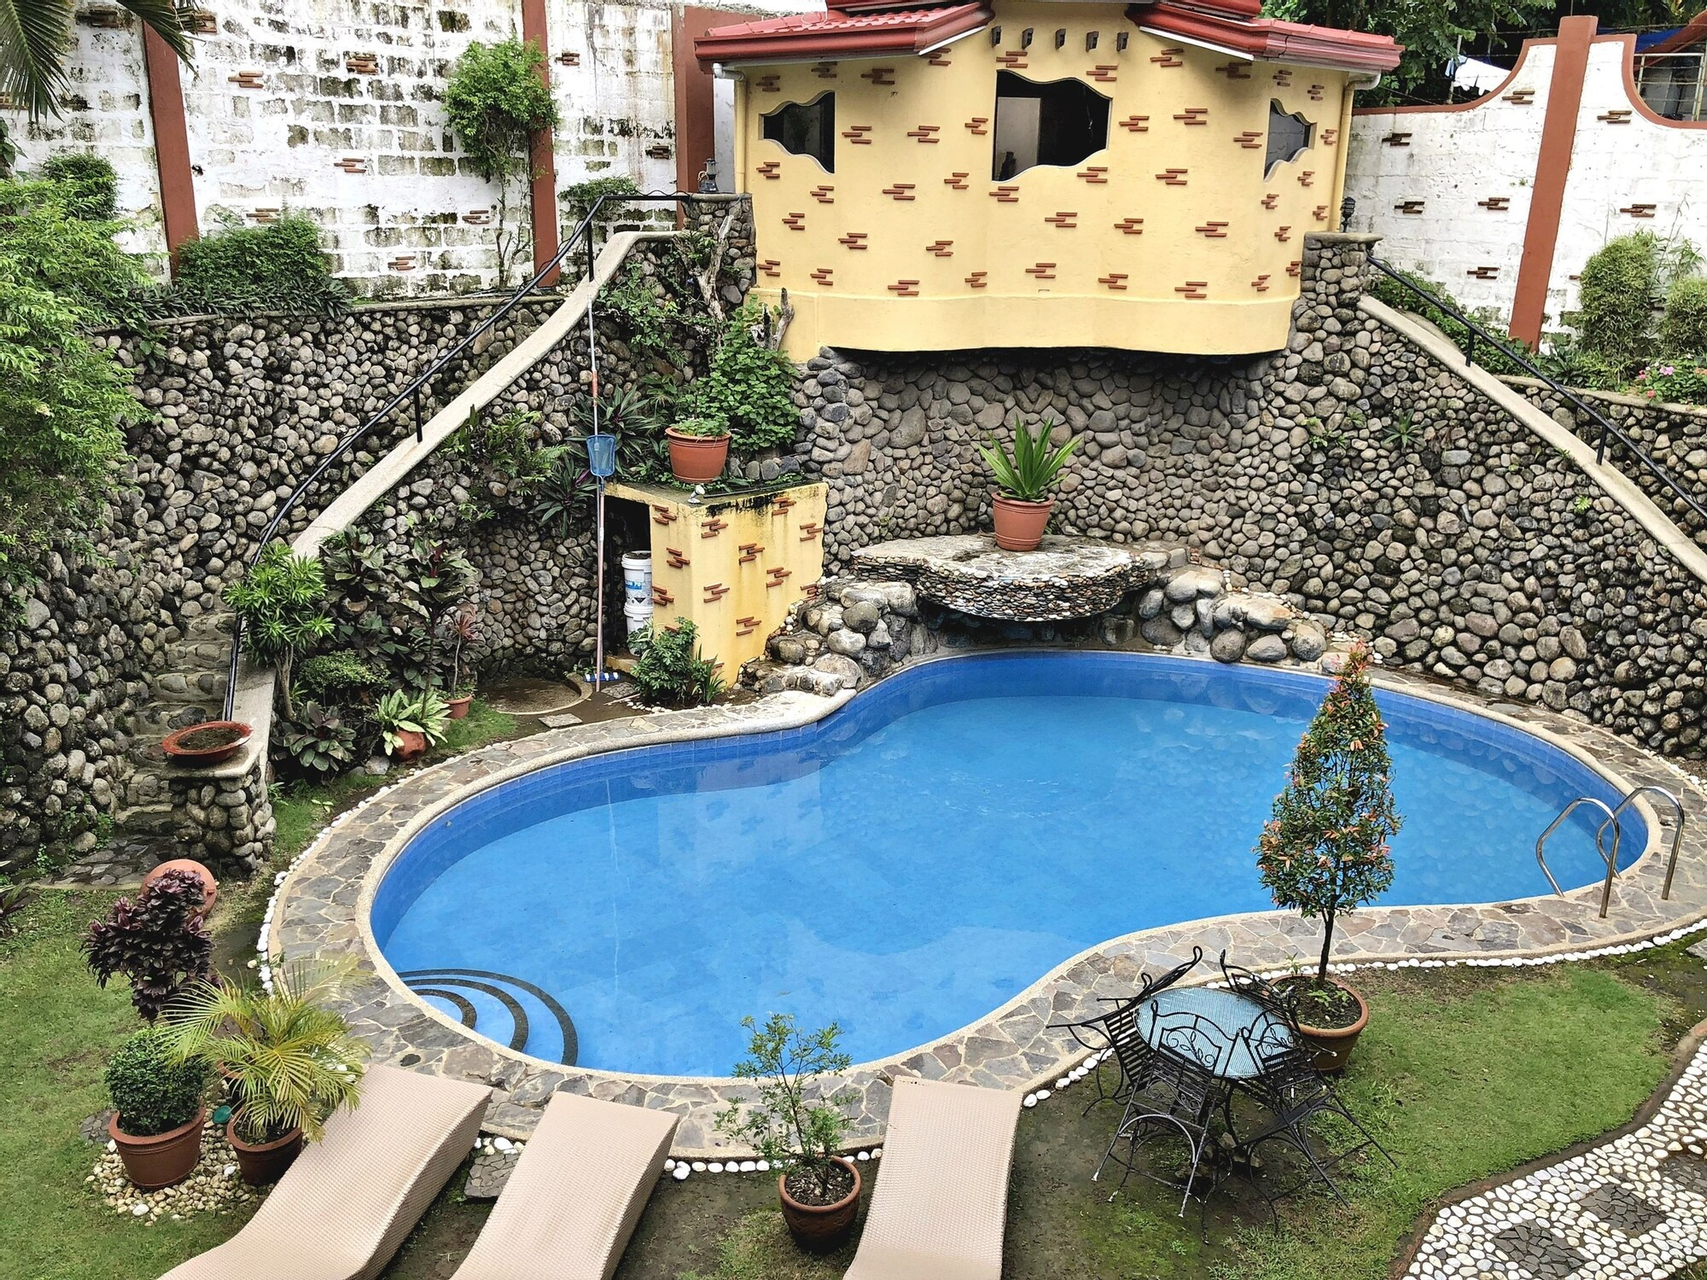 Outdoor pool 5, Pura Vida Resort, Tagaytay City